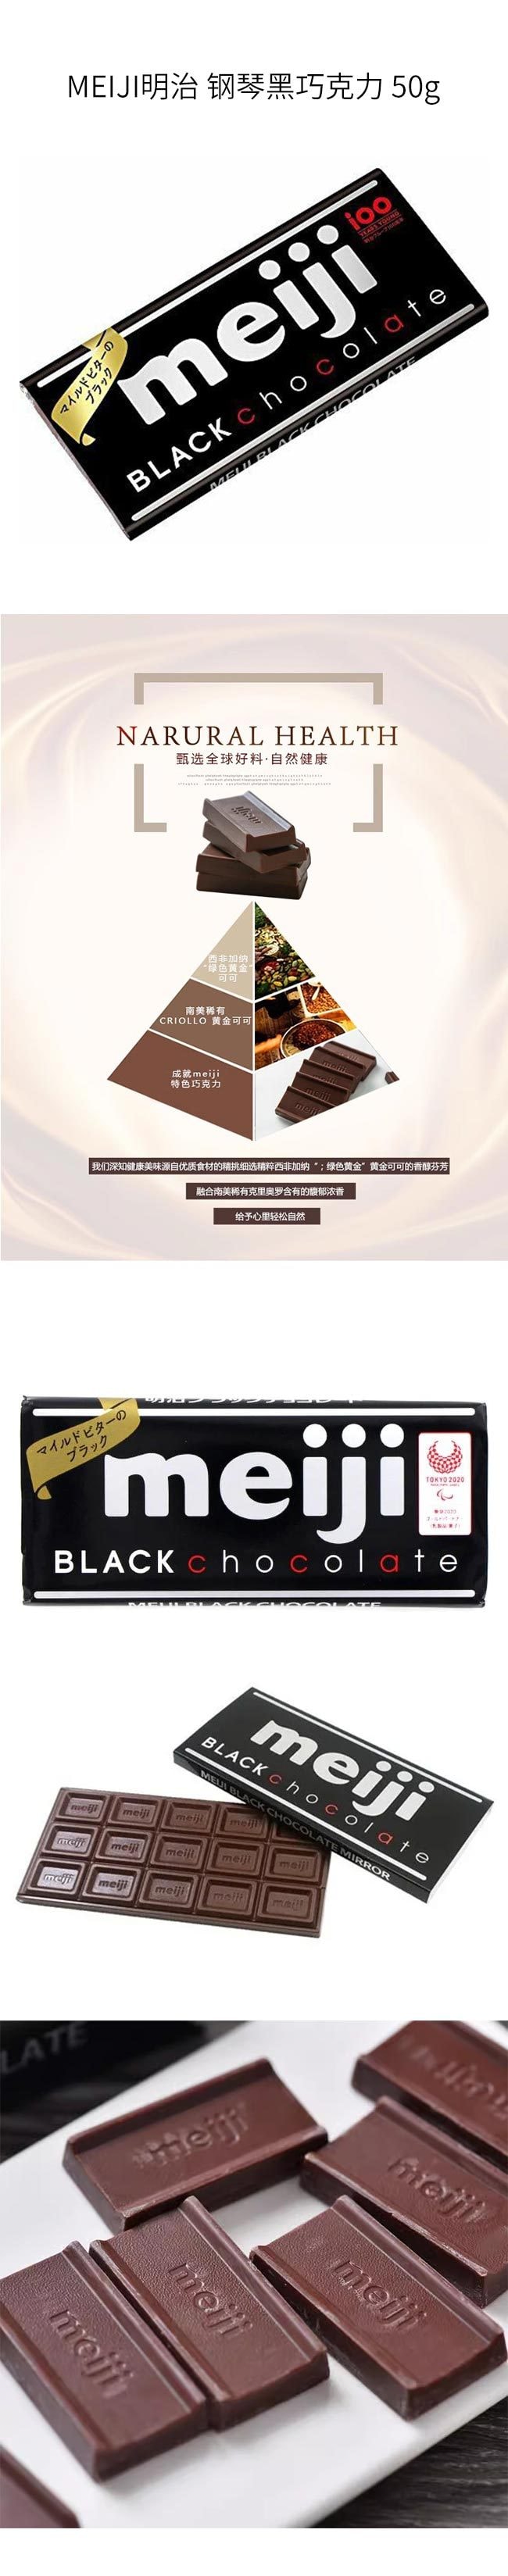 【日本直邮】MEIJI明治 钢琴黑巧克力 50g